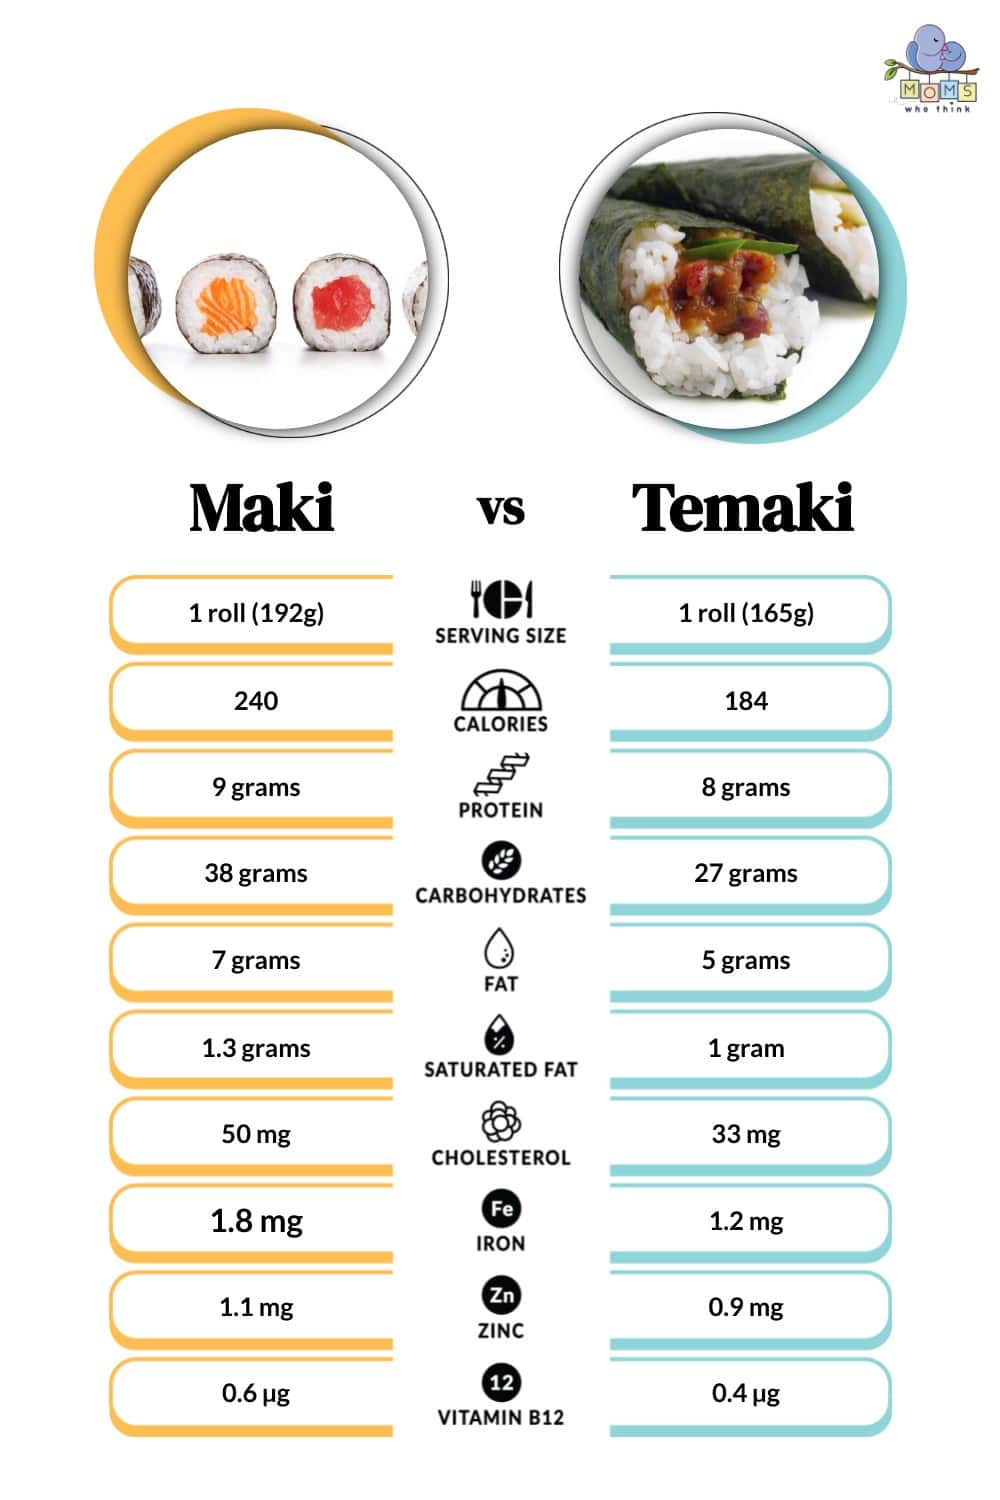 Maki vs Temaki